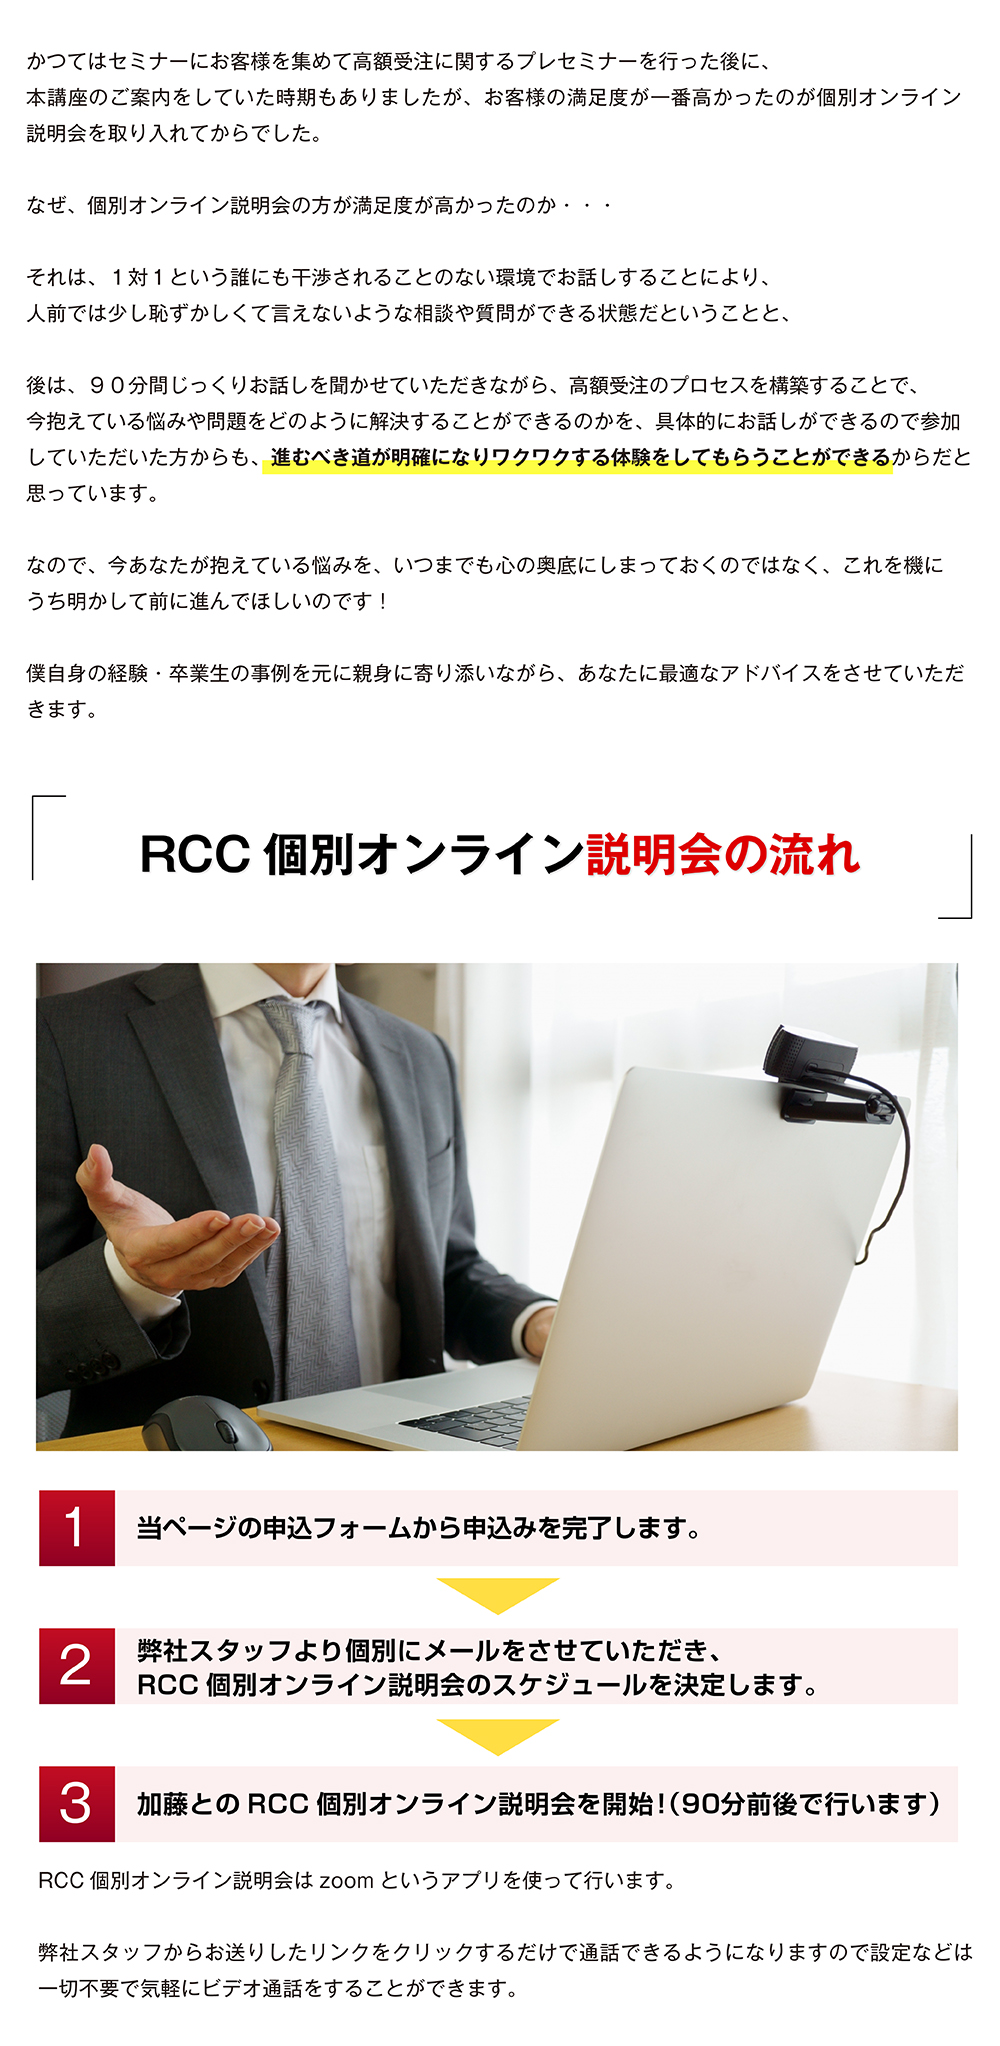 RCC個別オンライン説明会の流れ